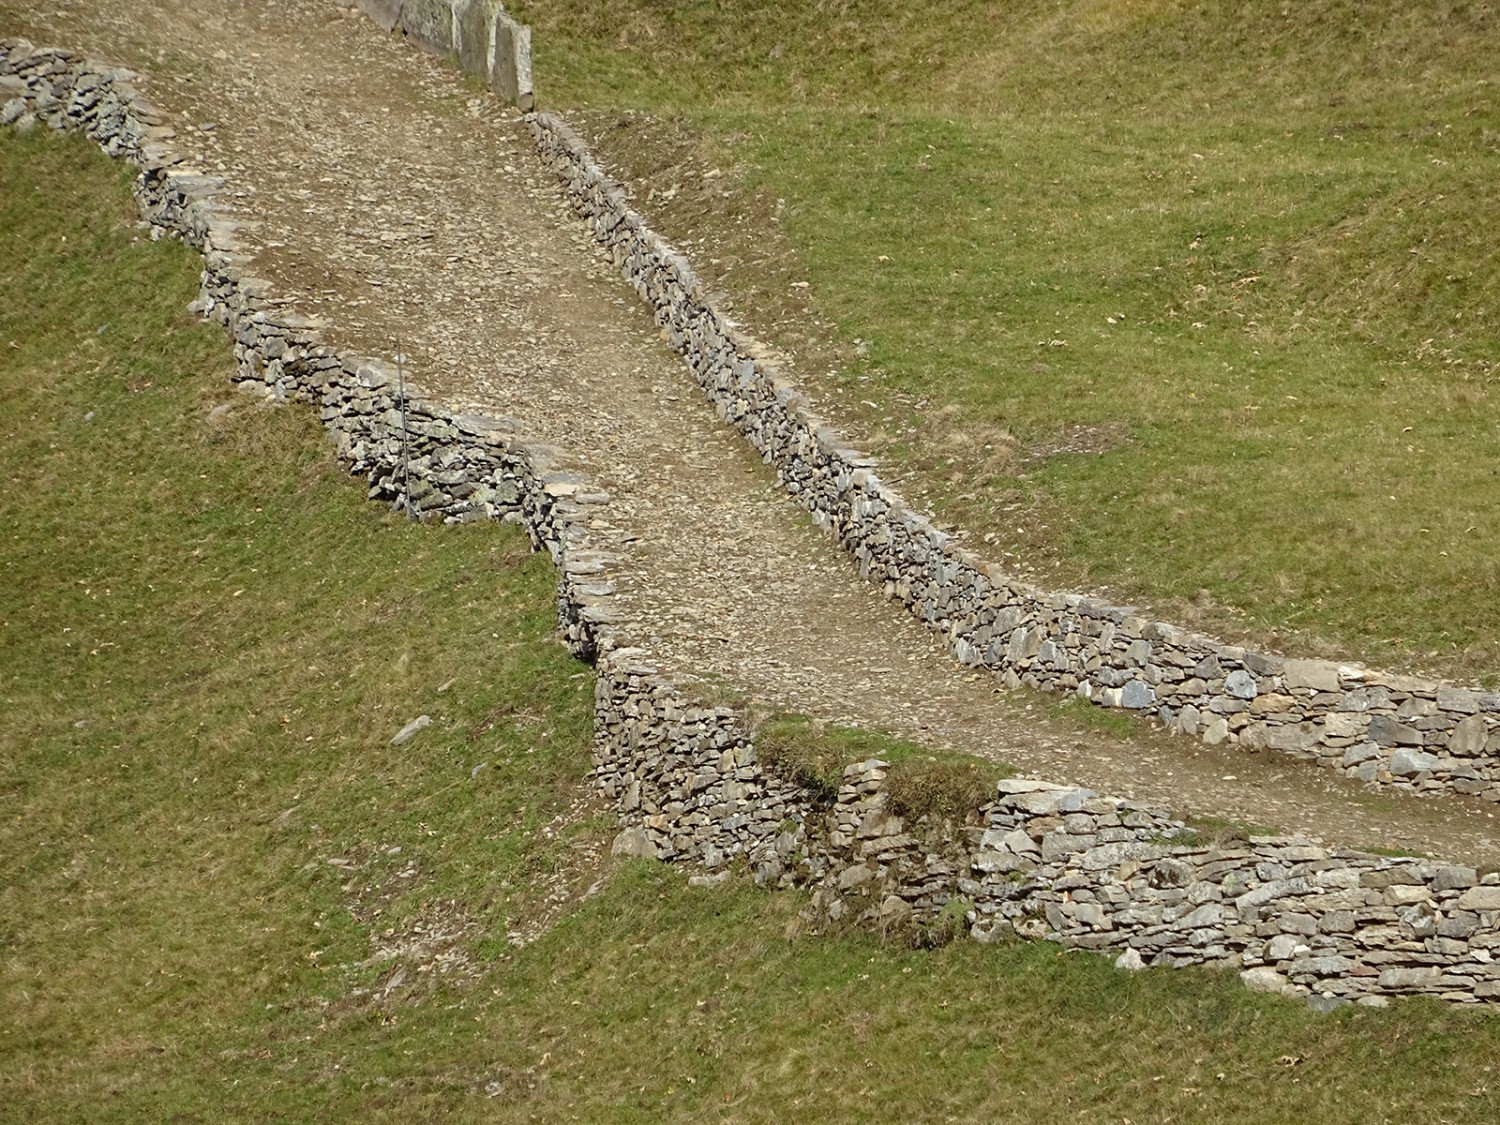 Des beaux murs de pierres sèches artisanaux sur le chemin vers Dagro.